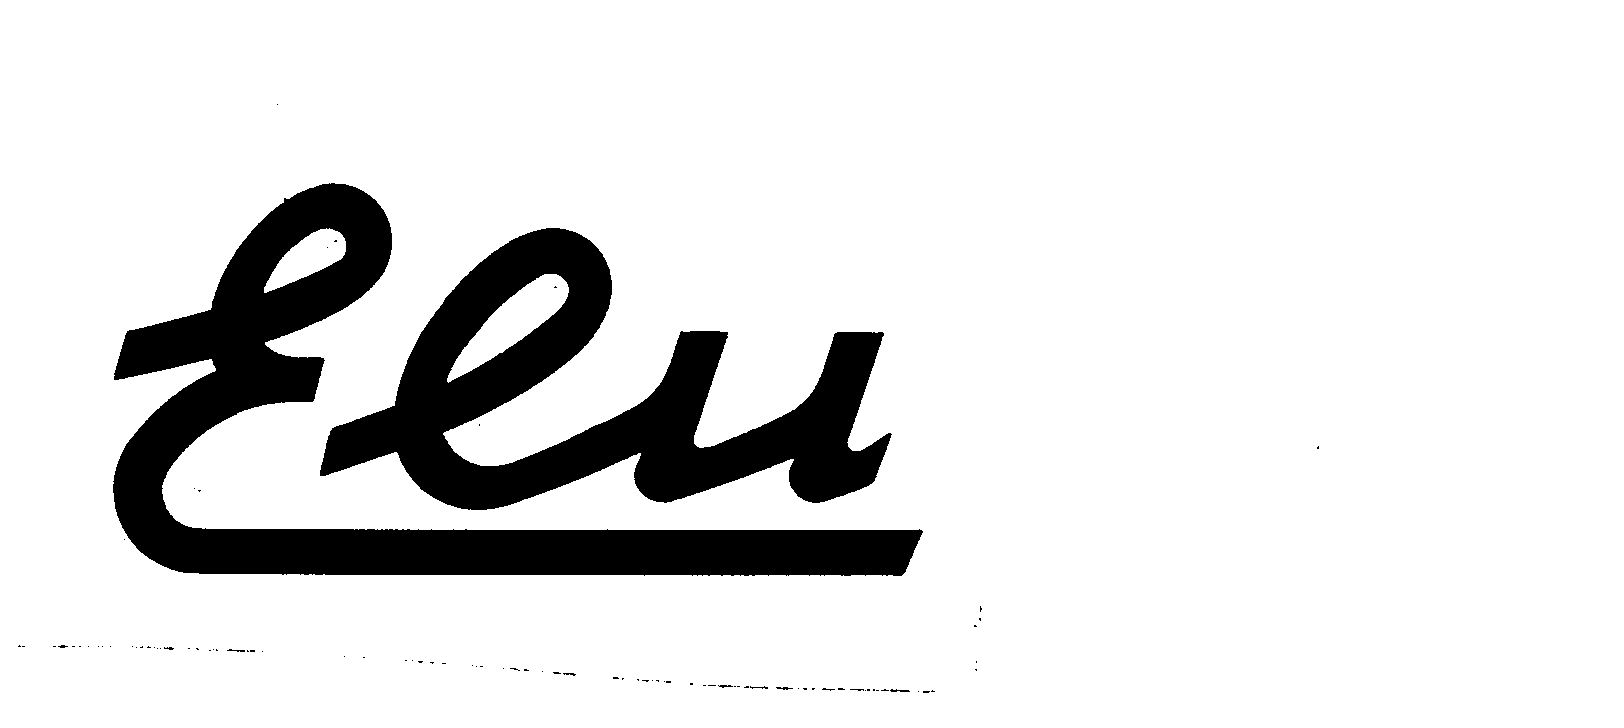 ELU